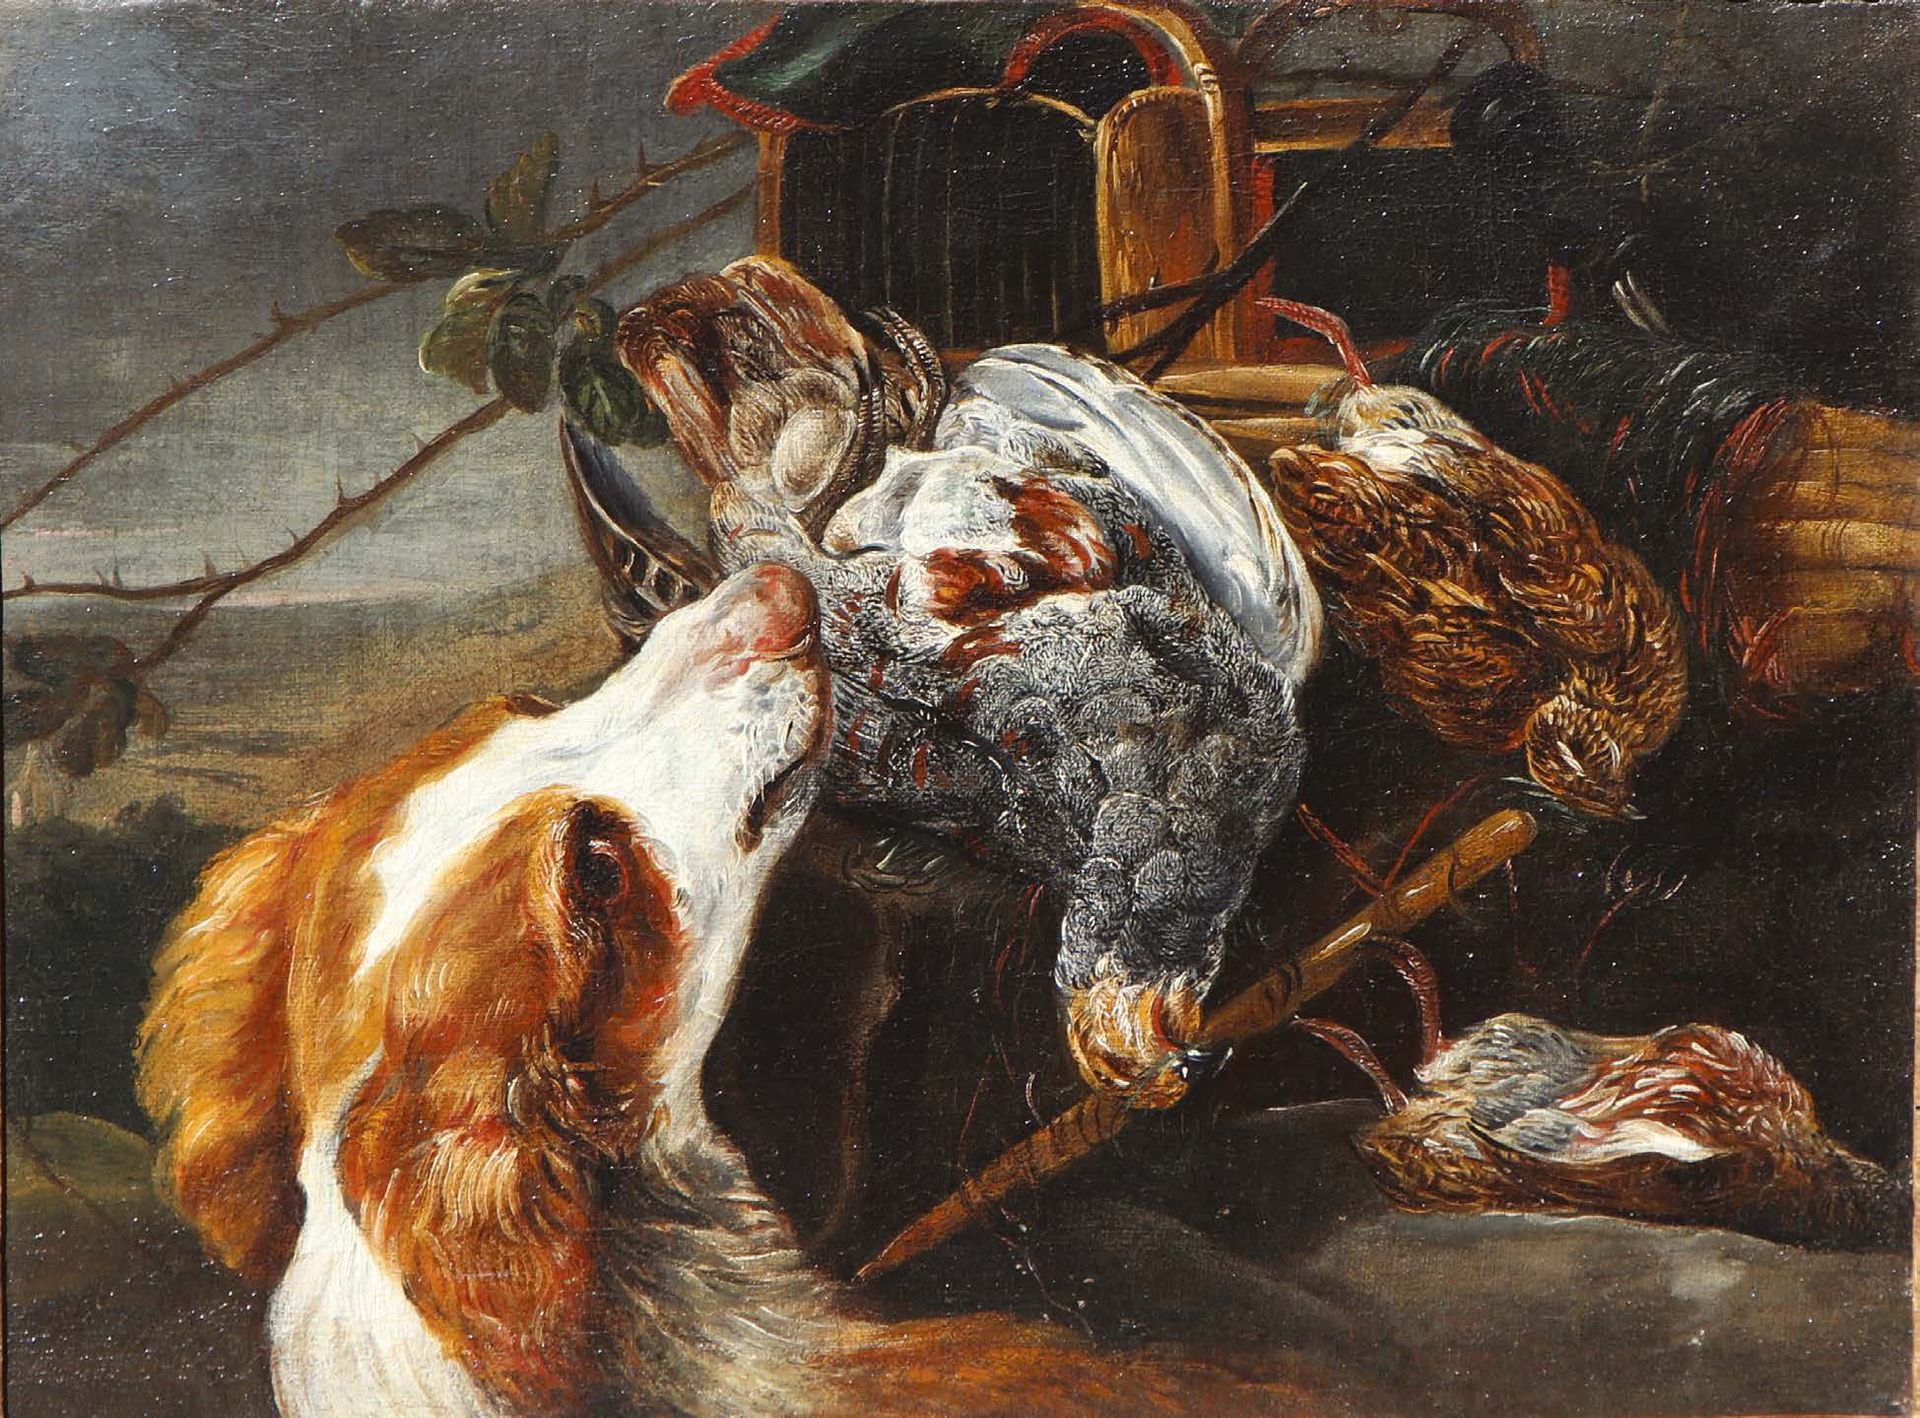 ATTRIBUÉ À JAN FYT (ANVERS 1611 - 1661) 静物画中的猎狗 帆布。
H_41 cm W_56 cm